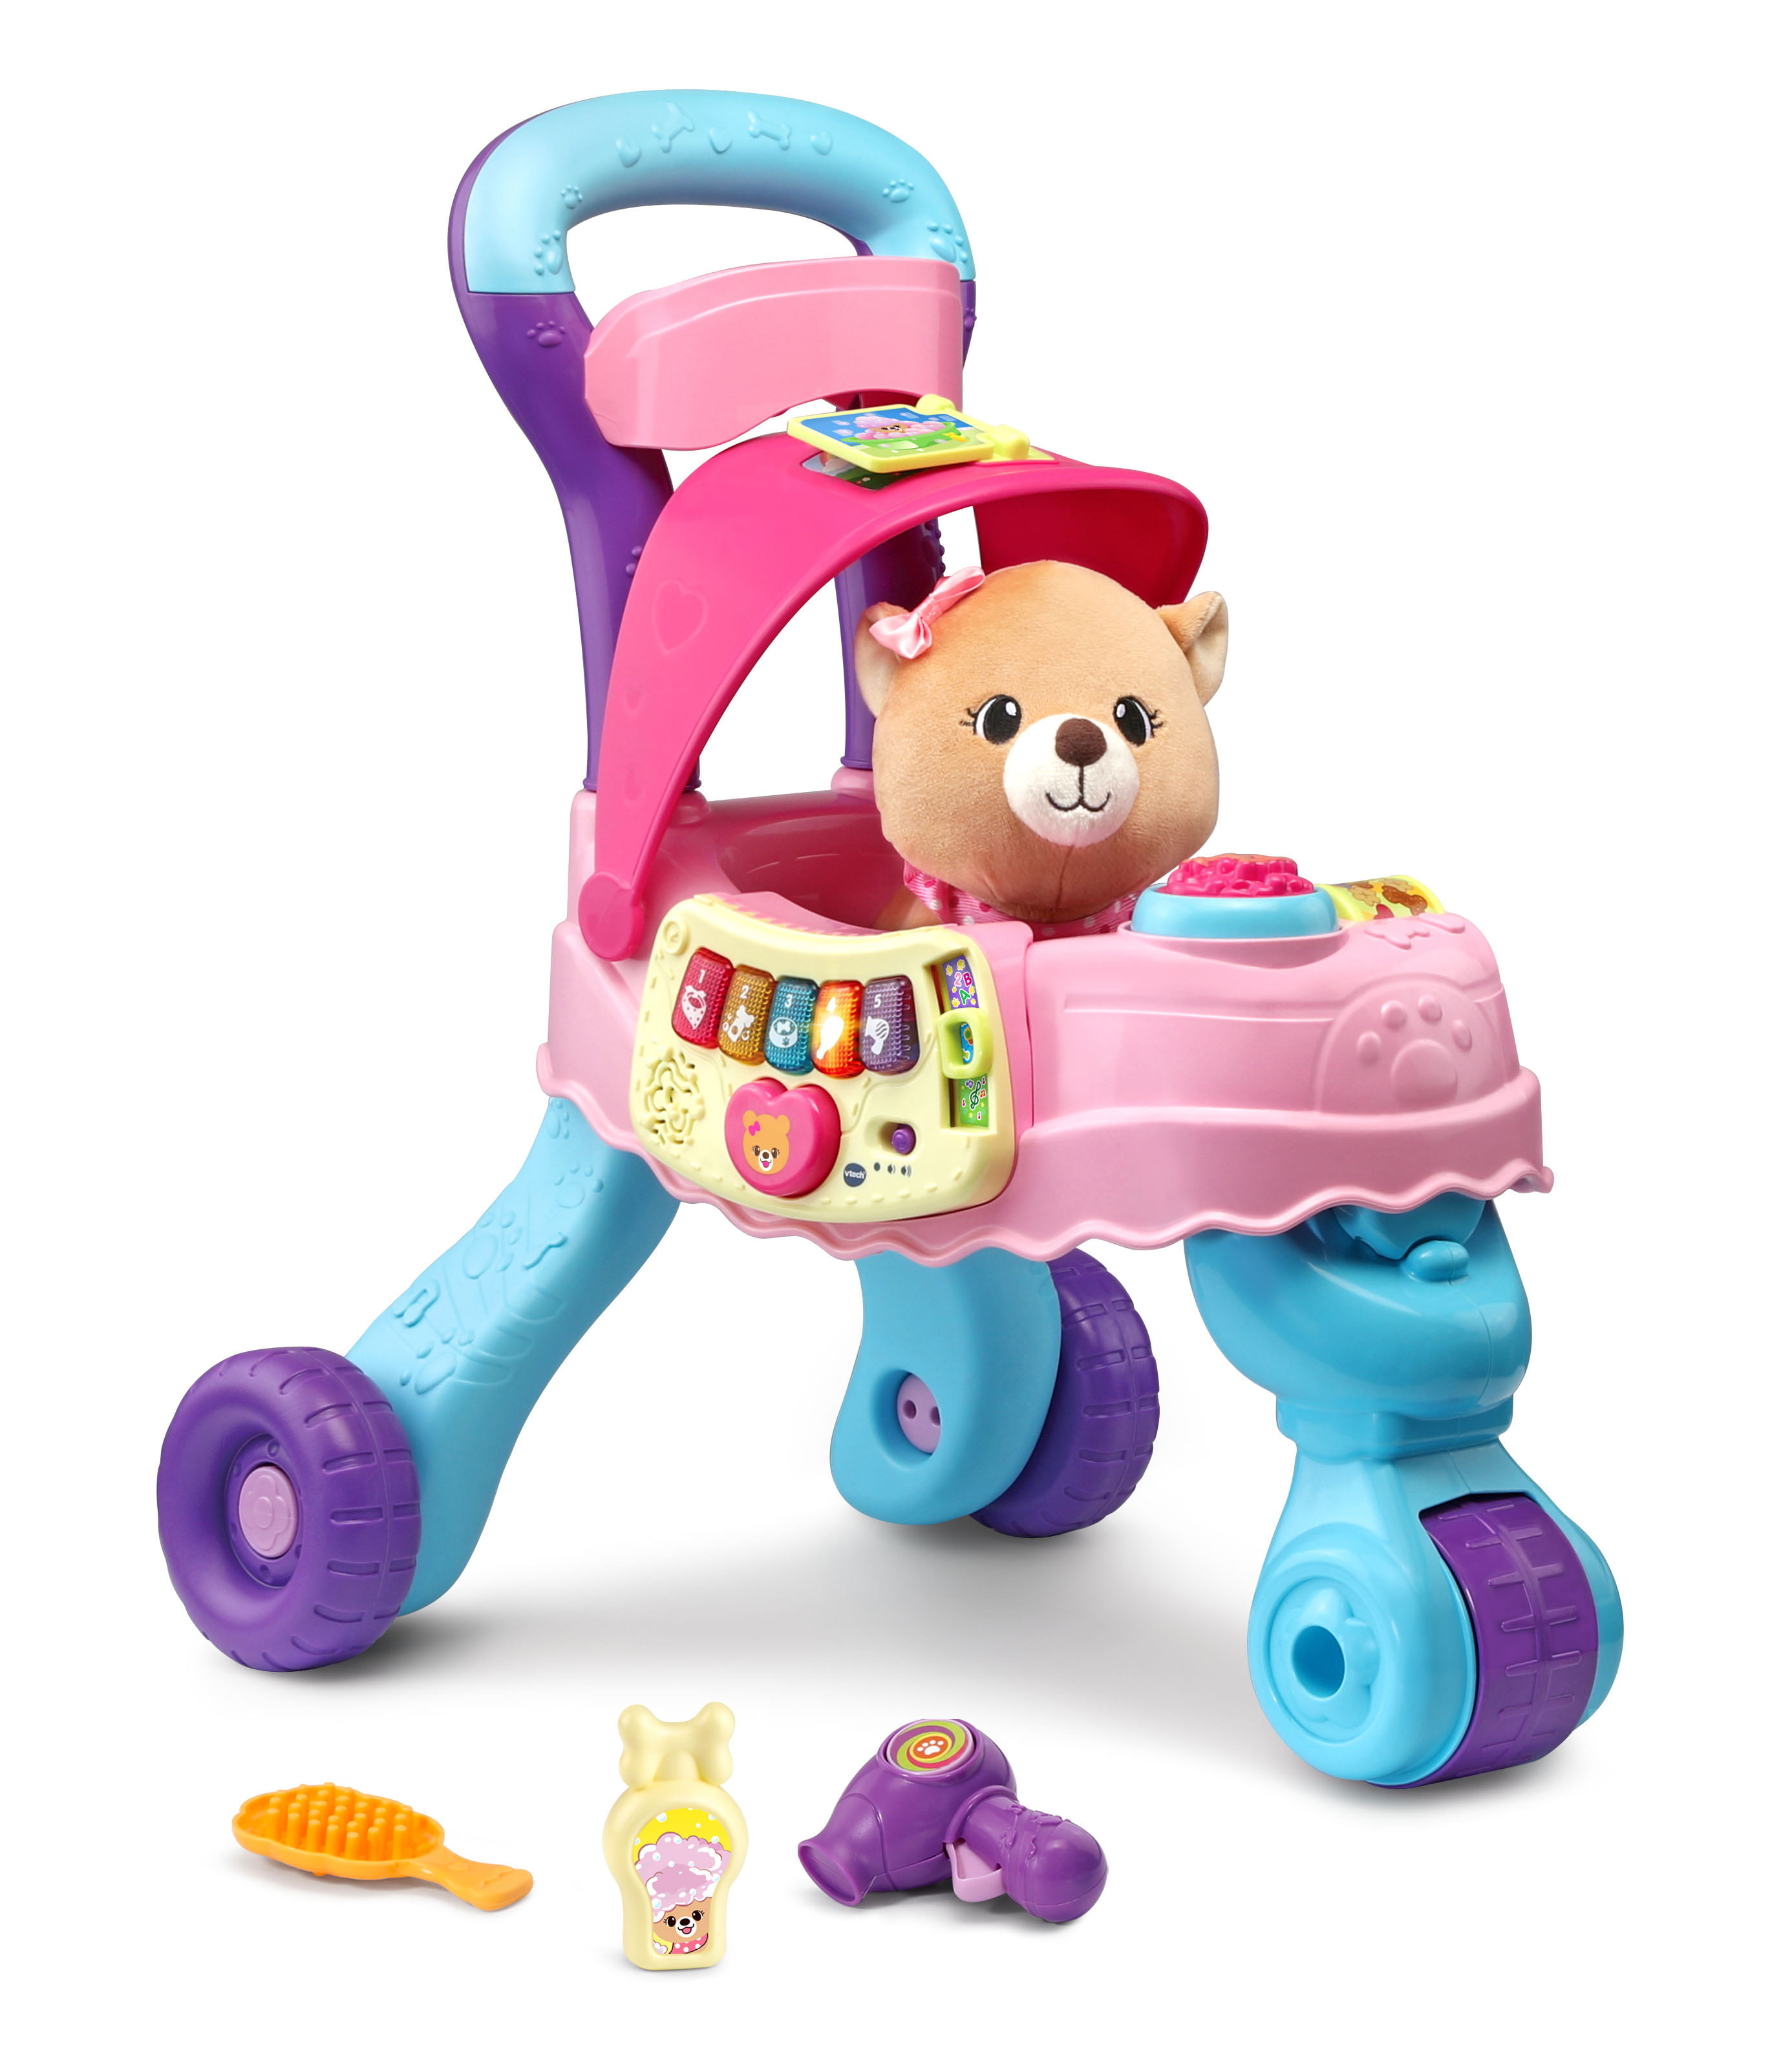 VTech Cutie Paws Puppy Stroller Toy w/ Plush Puppy & Accessories $20 + Free S&H w/ Walmart+ or $35+